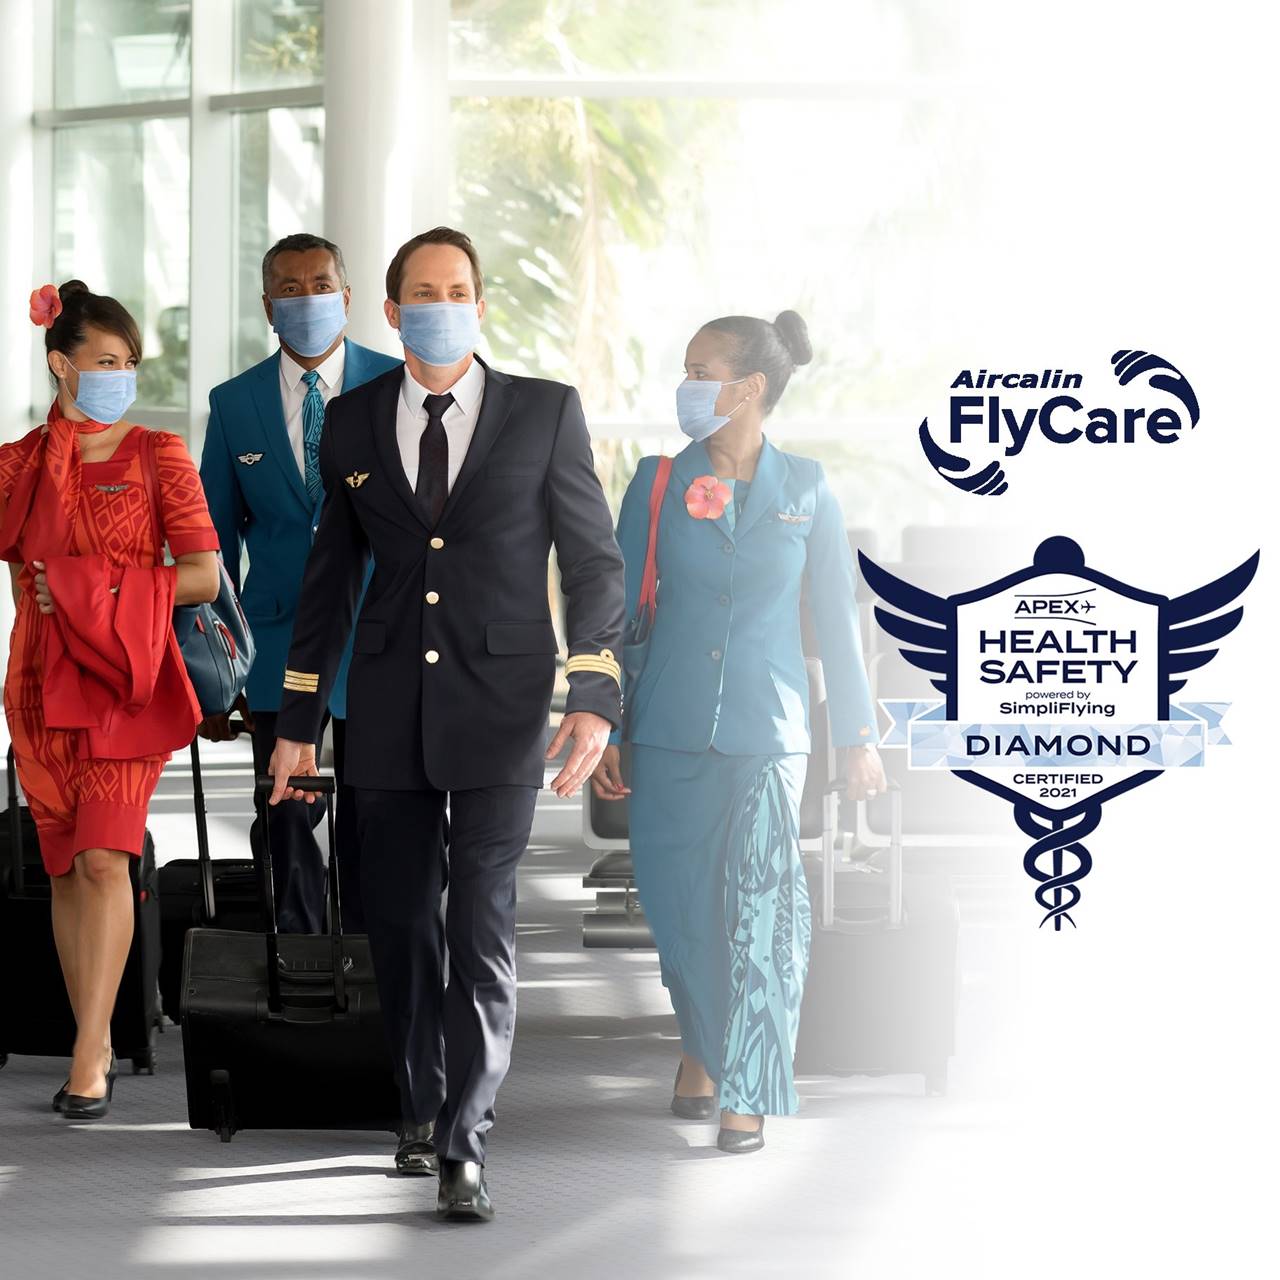 Aircalin pilot and flight attendants walk